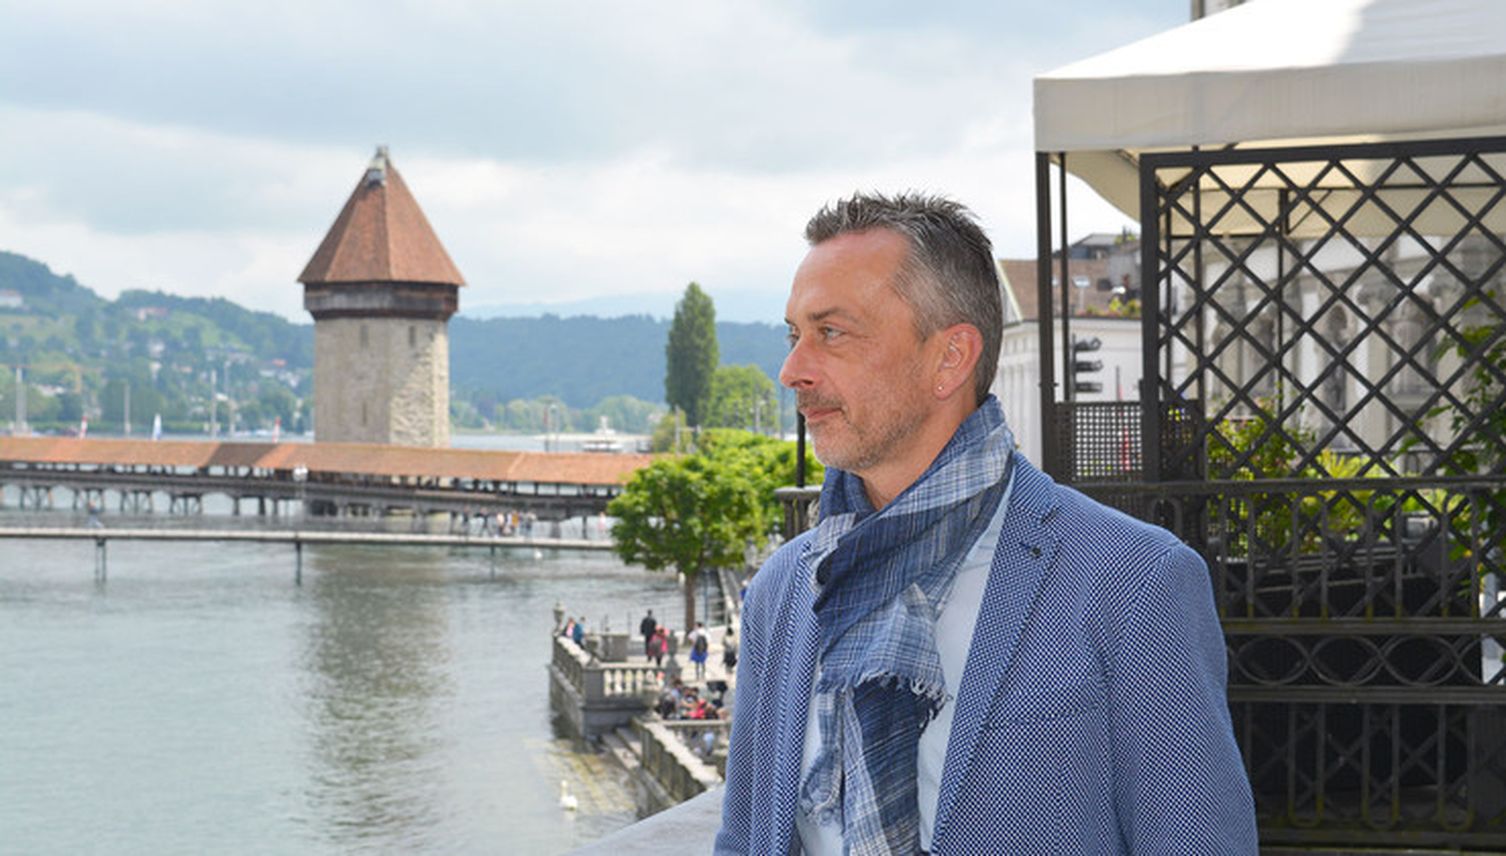 Luzerner Kulturbeauftragter Stefan Sägesser tritt zurück